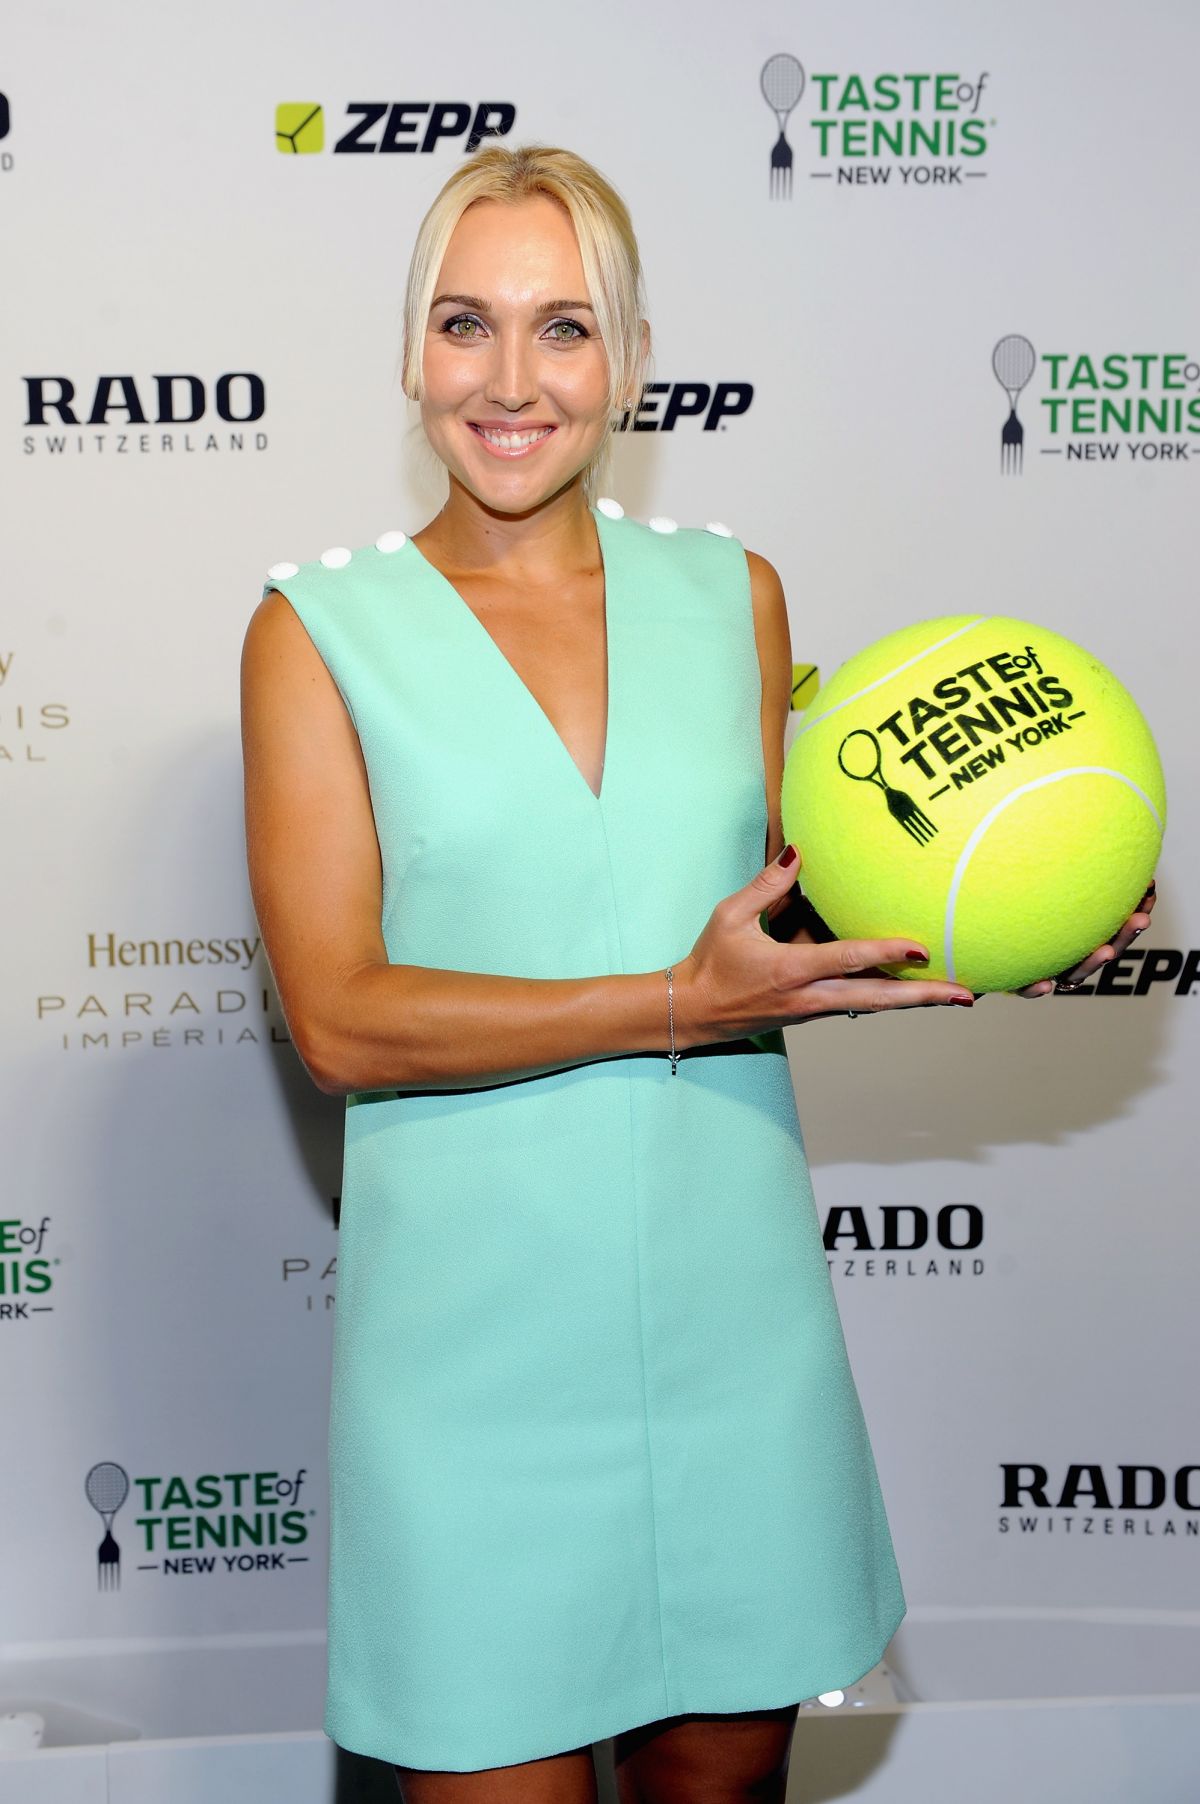 ELENA VESNINA at Taste of Tennis Gala in New York